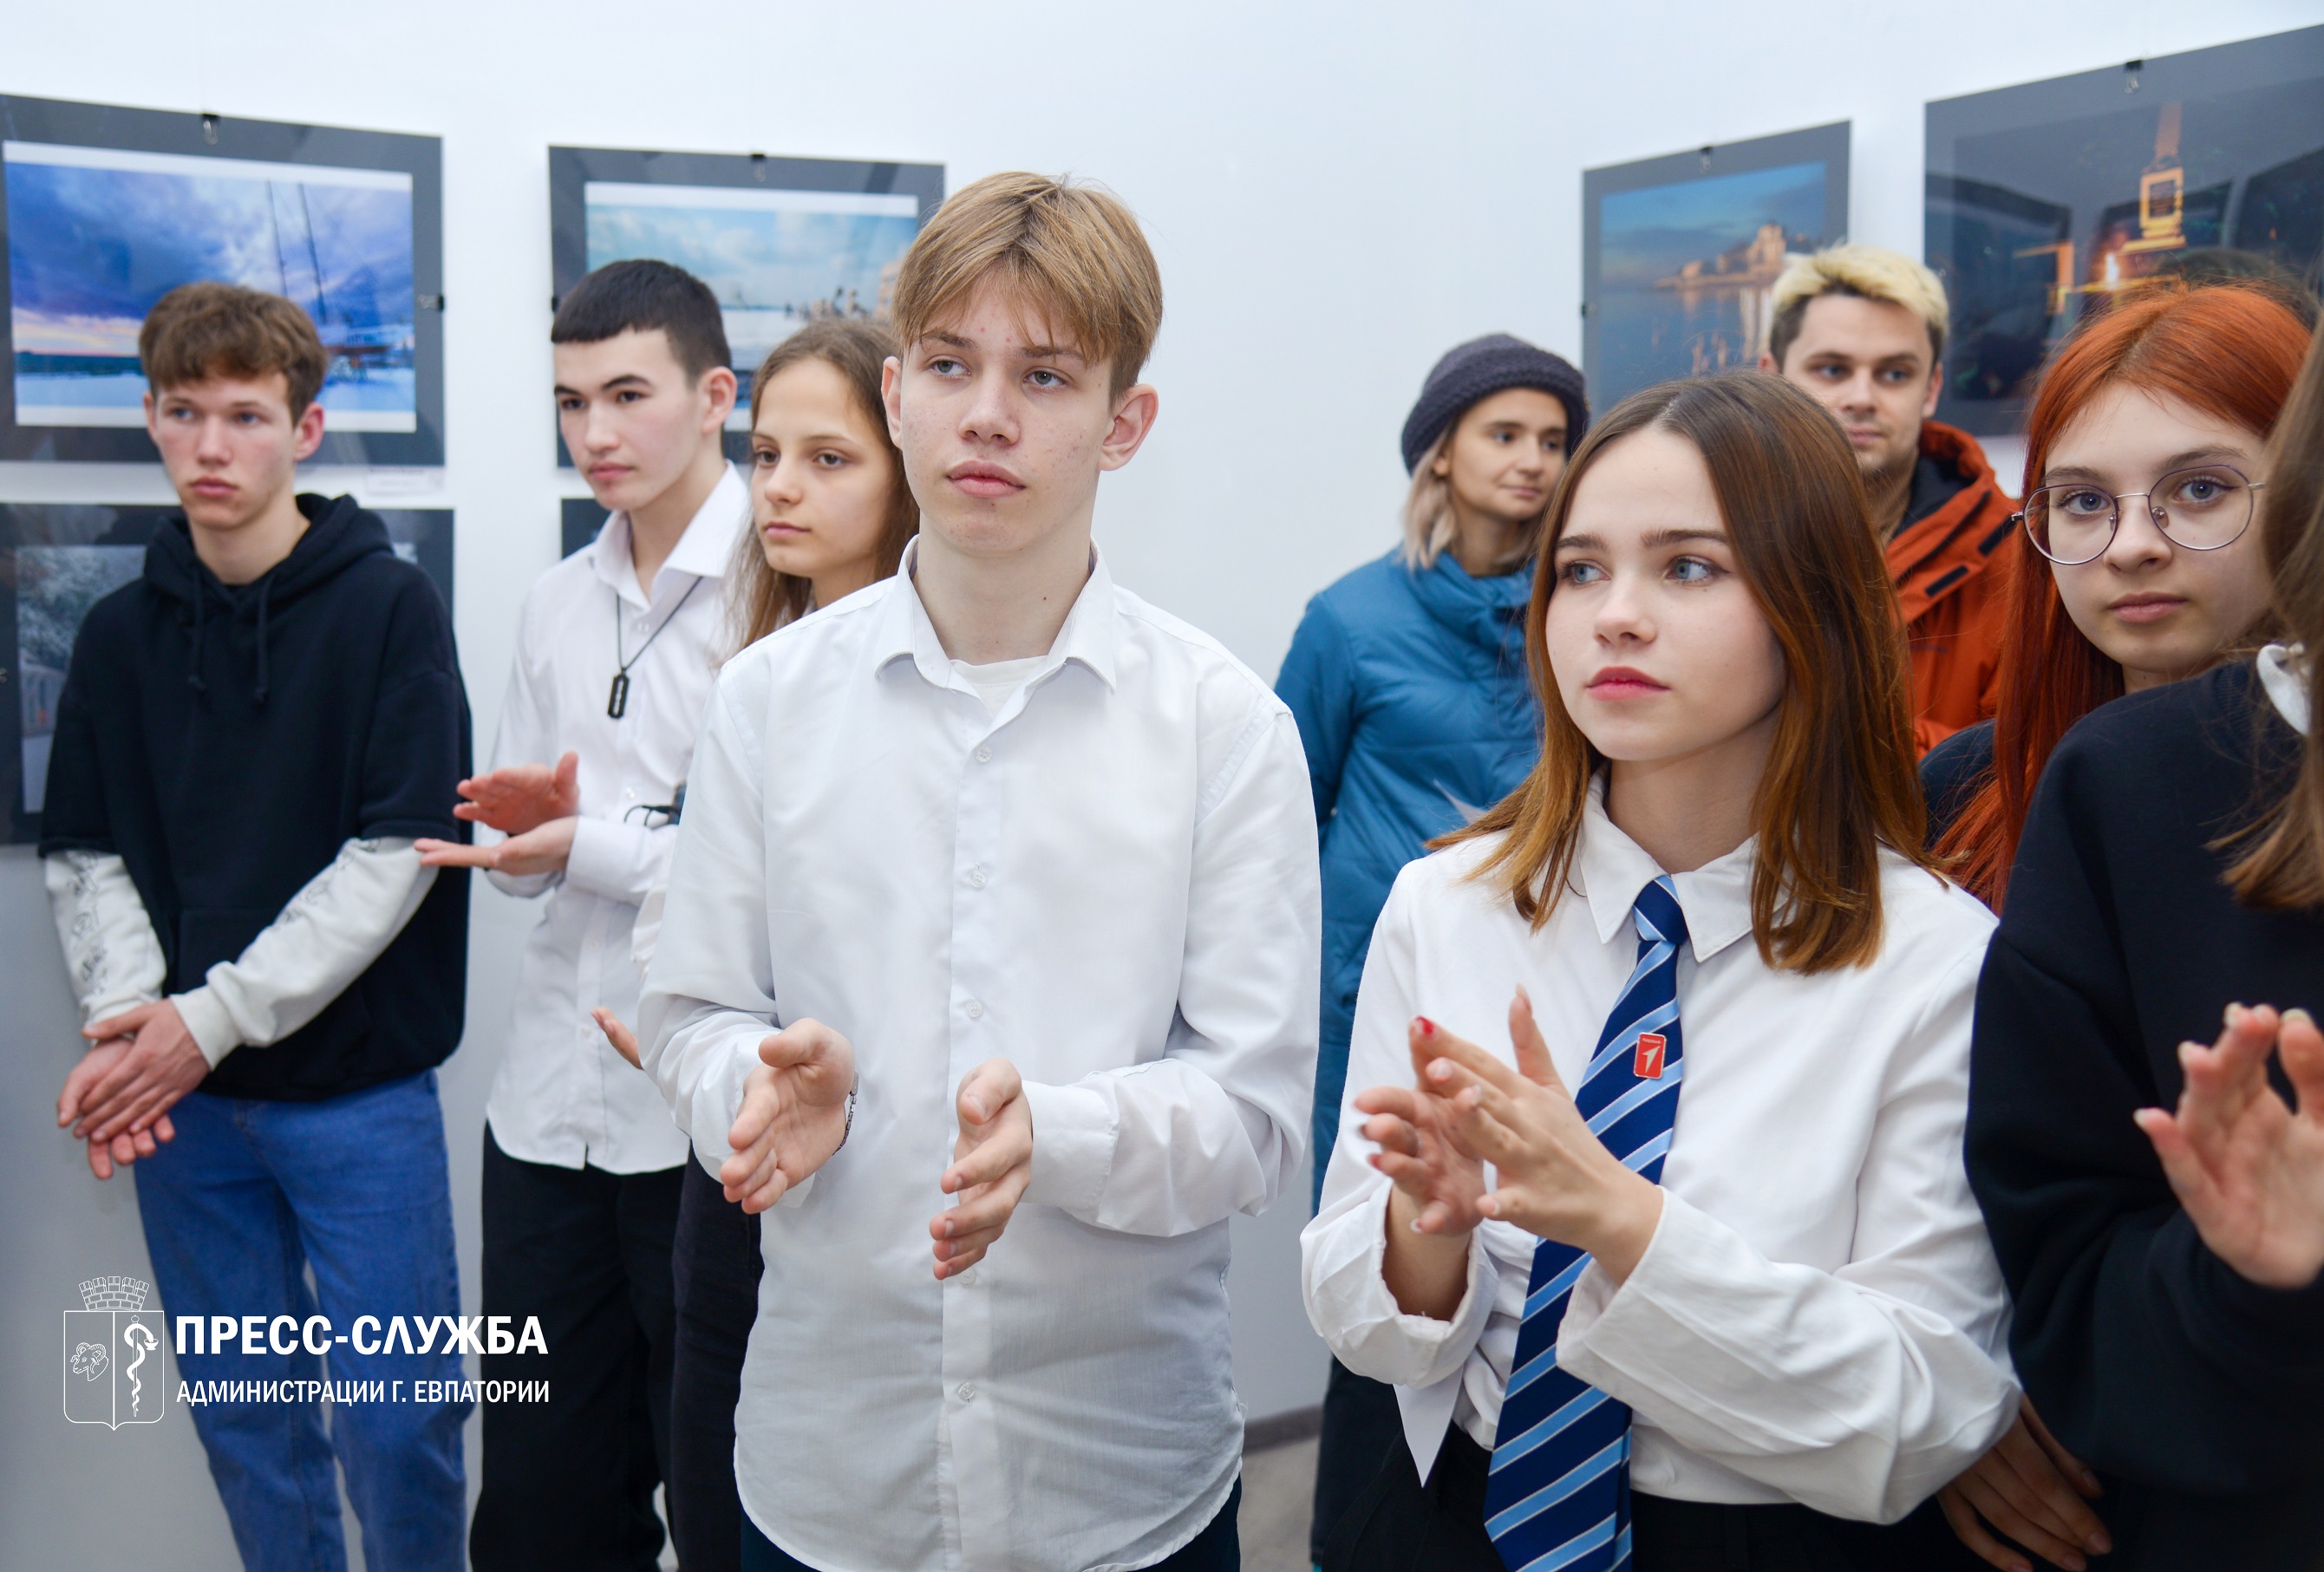 В Евпатории открылась фотовыставка победителей конкурса «Зимний Крым»